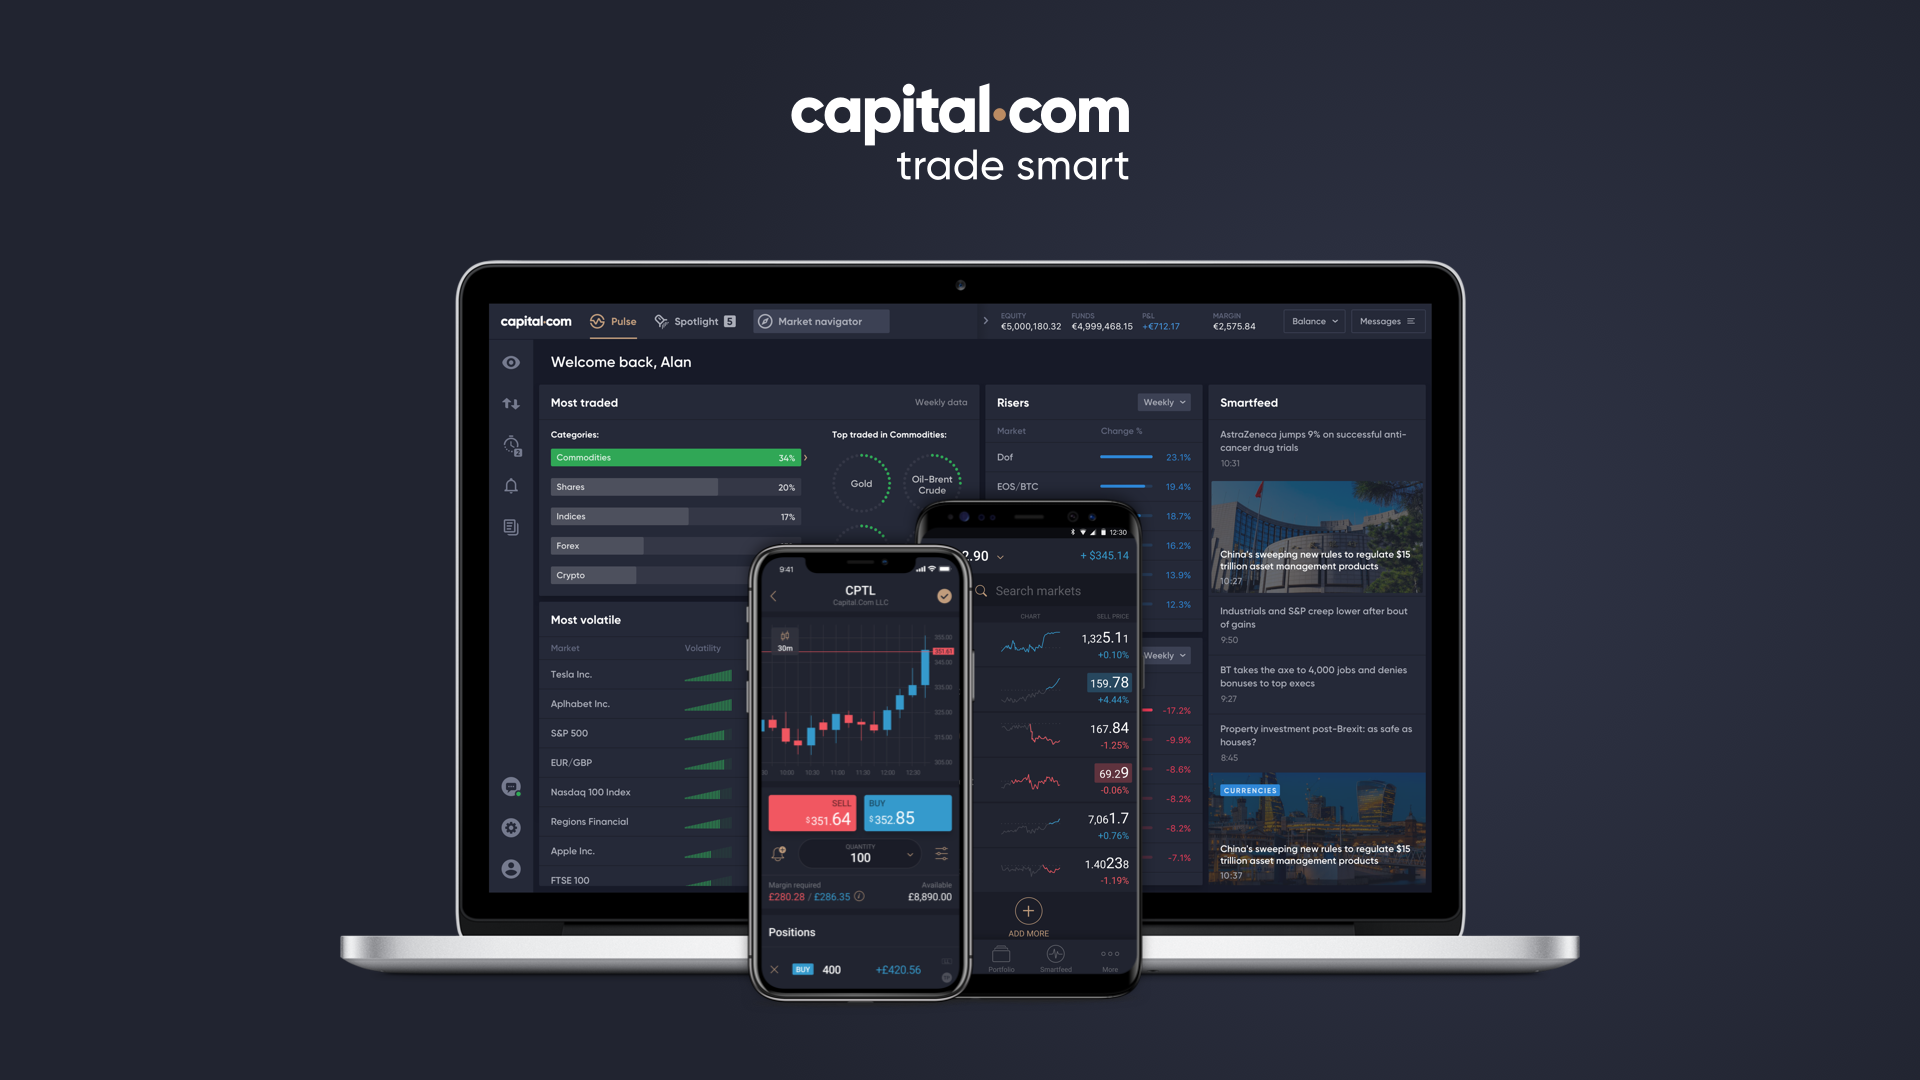 Is Capital.com a scam broker or legit?